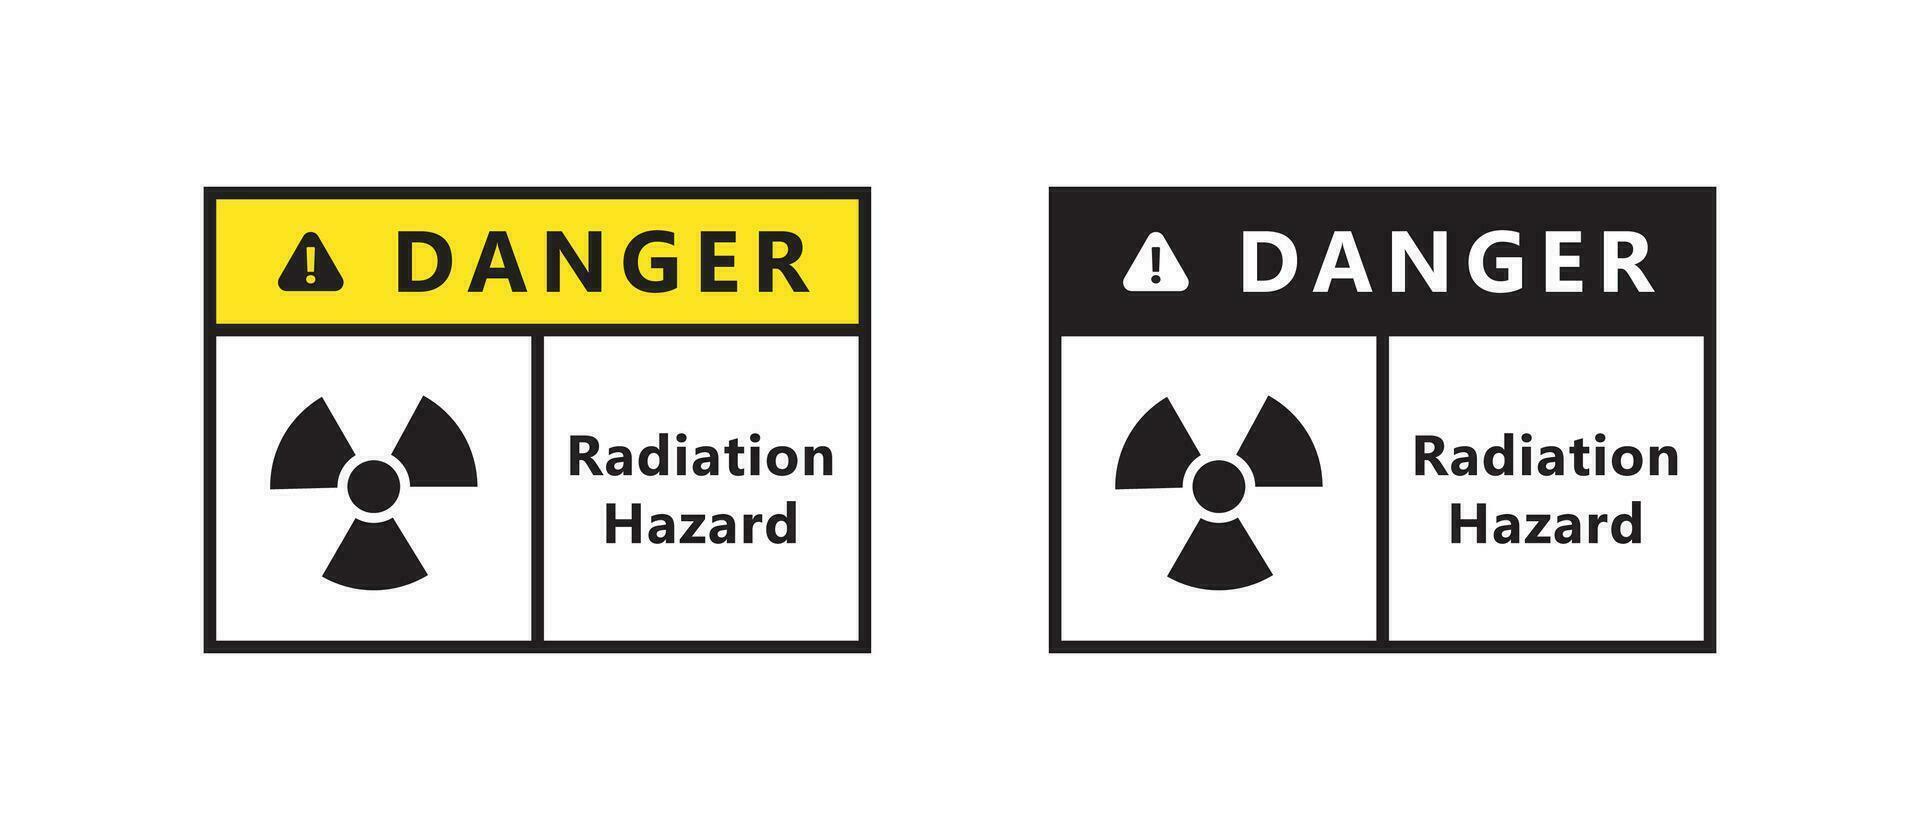 perigoso material sinais. radiação sinais. Atenção placa. vetor escalável gráficos